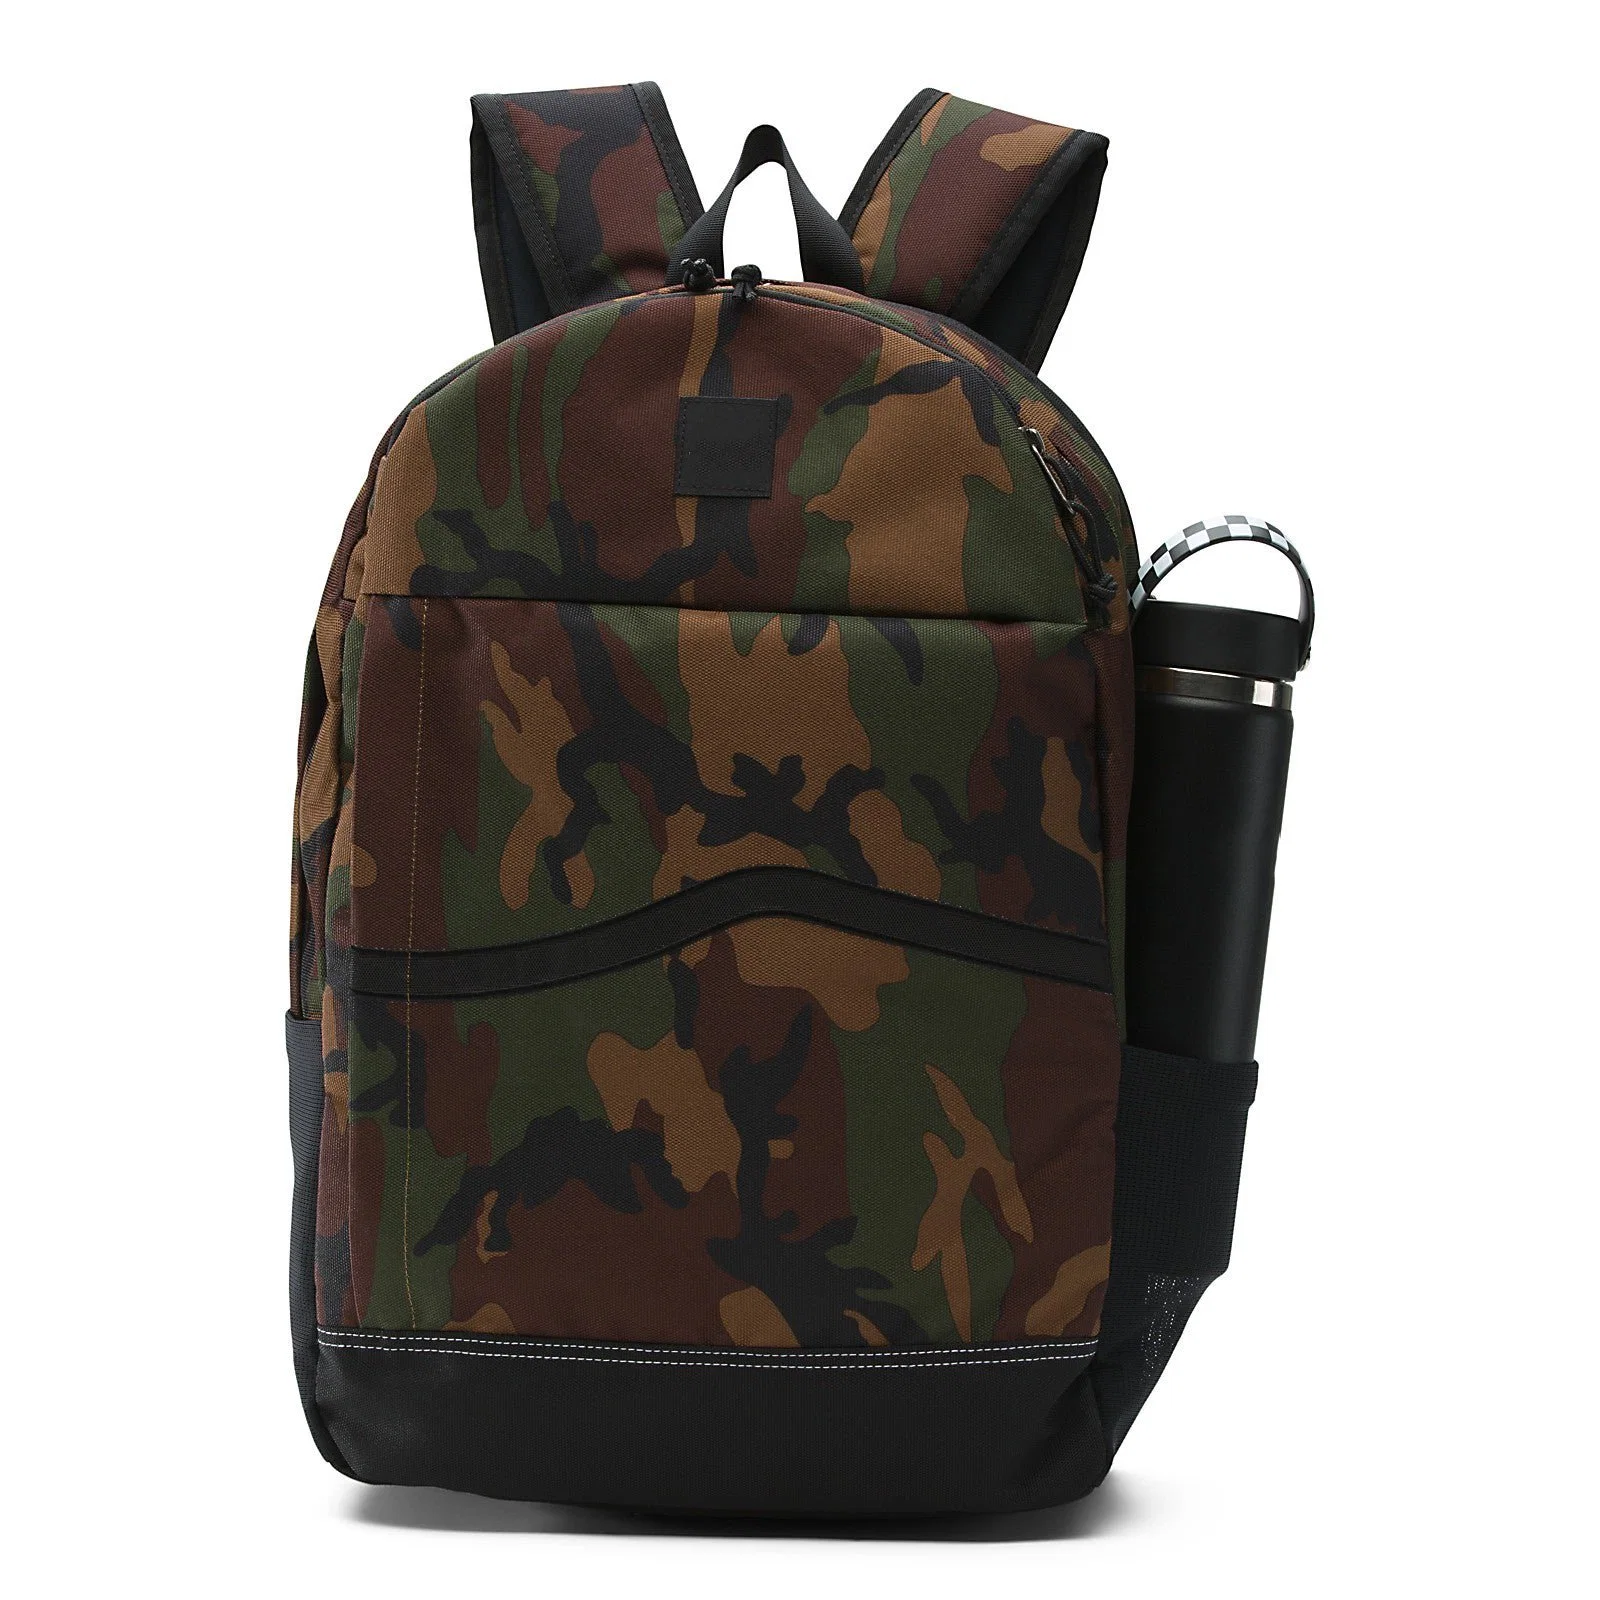 15" Men Women Laptop Backpack School Bag